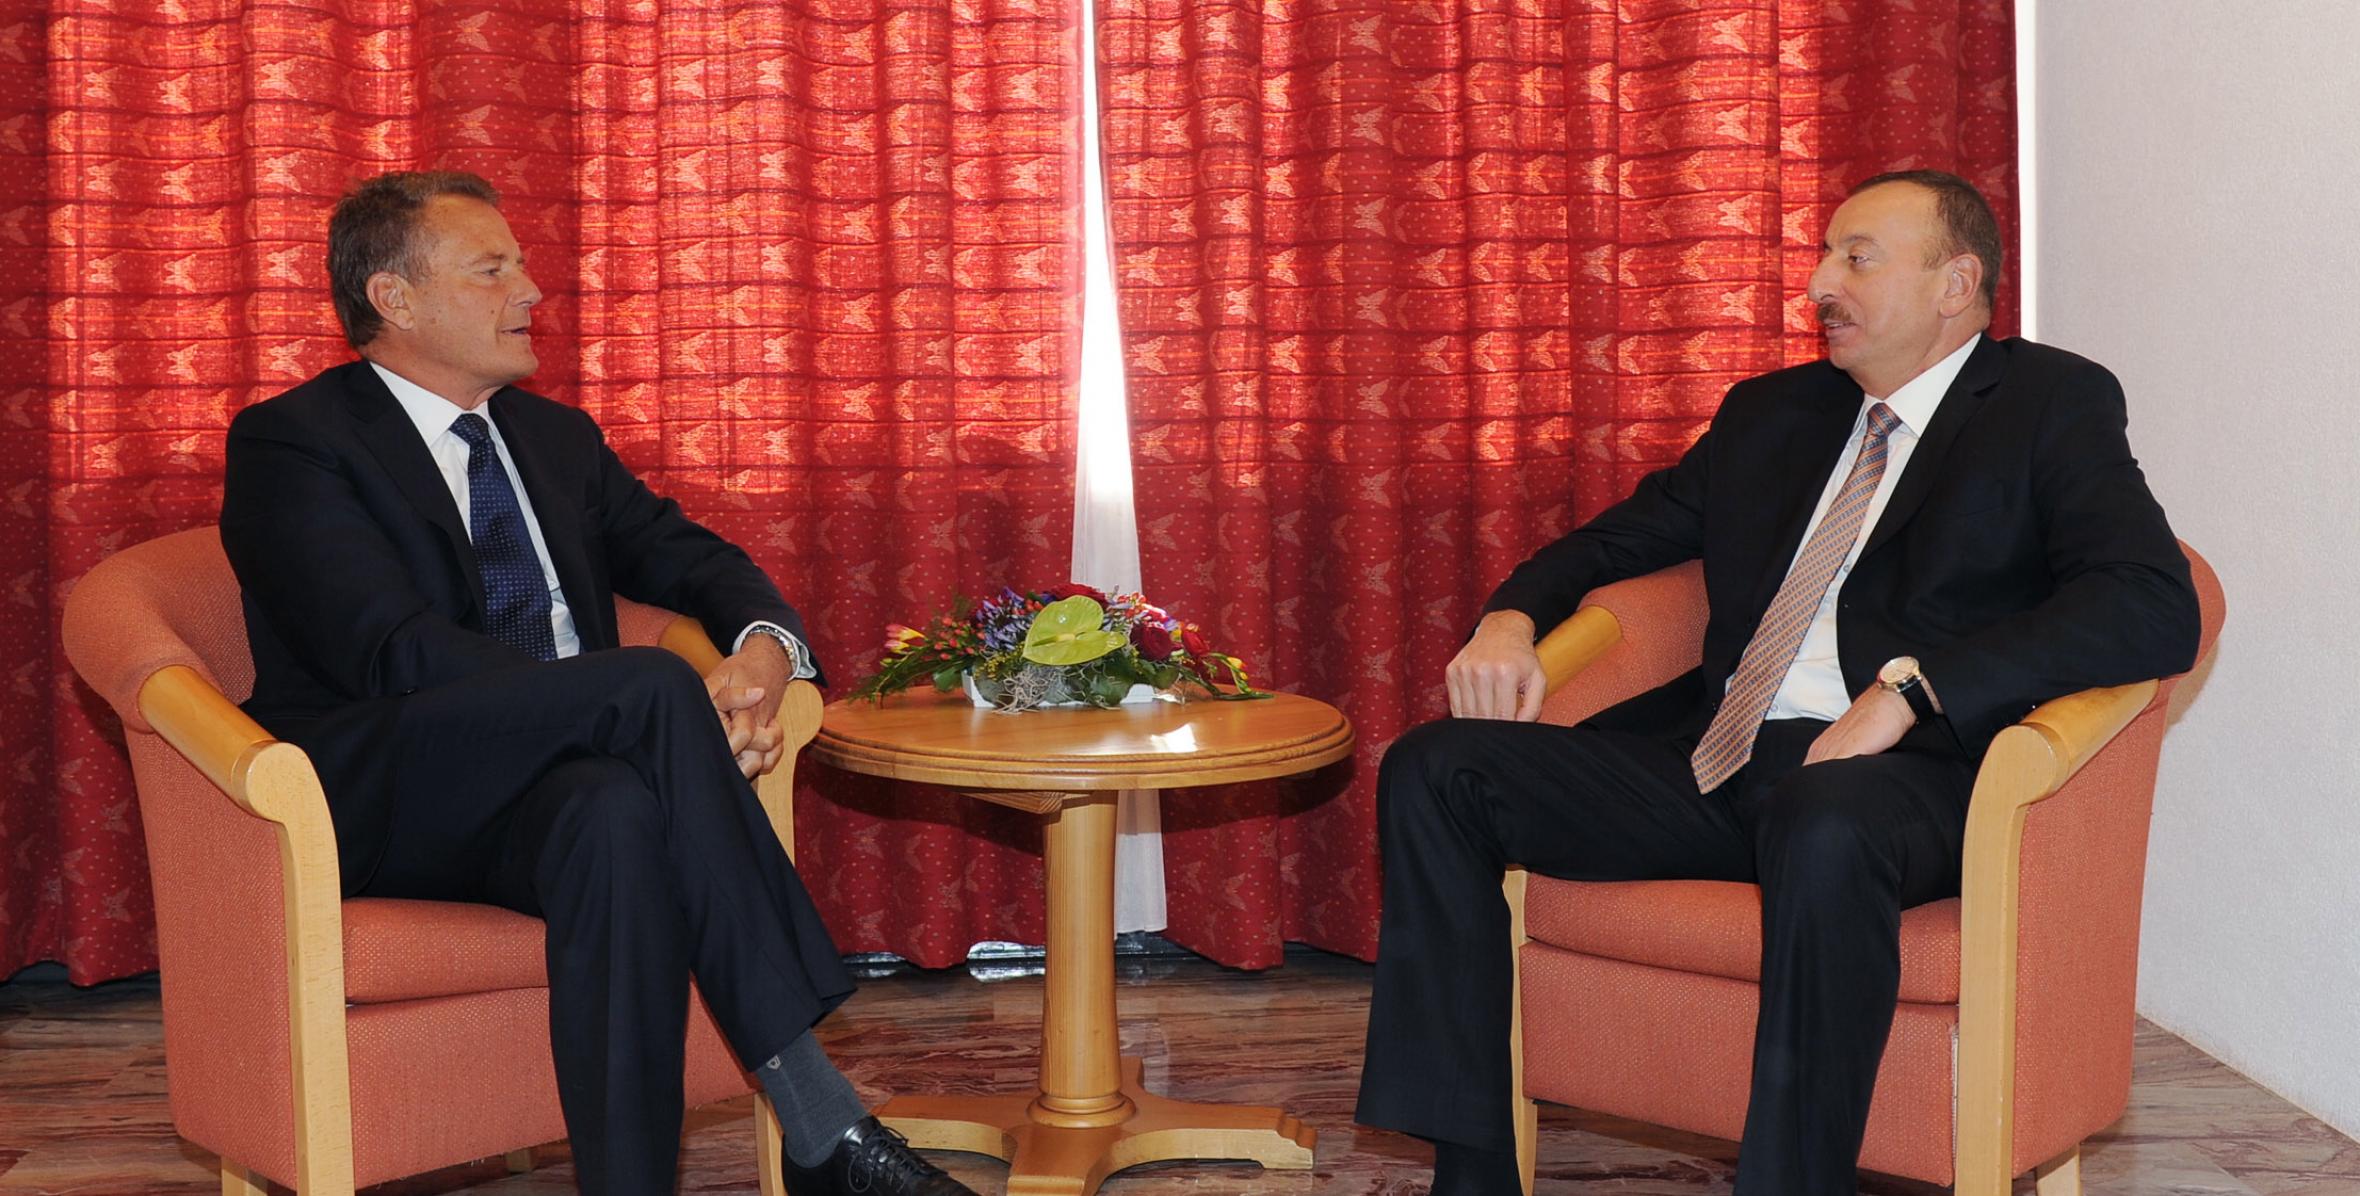 Состоялась встреча Ильхама Алиева с председателем компании bp Карлом-Хенриком Сванбергом